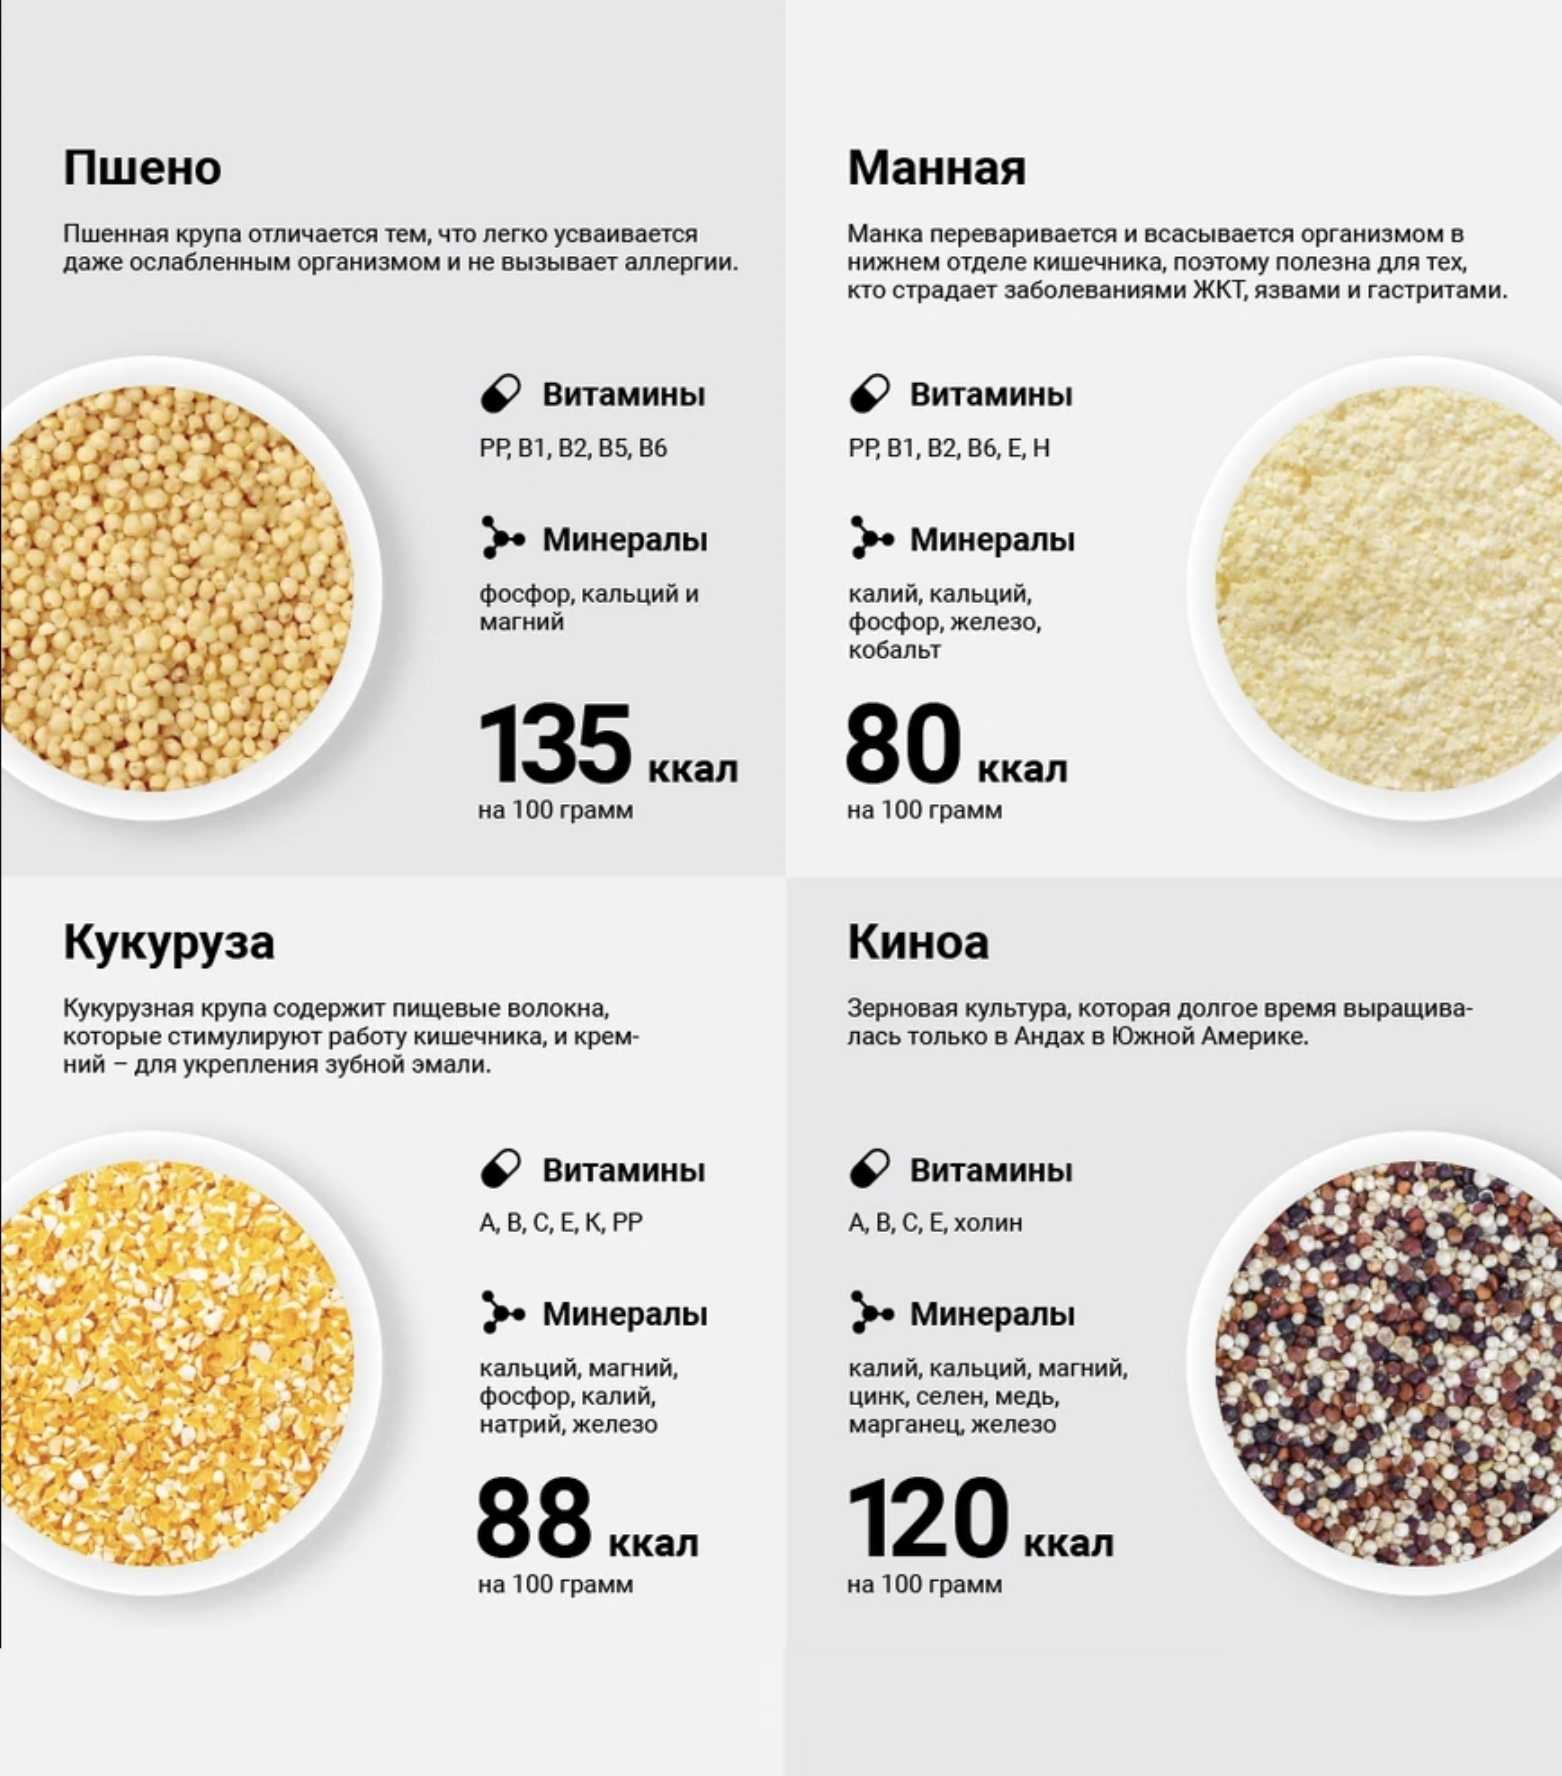 Рис для похудения: рецепты для снижения веса, его виды, отзывы, польза бурого, выбор лучшей рисовой диеты на 7 дней